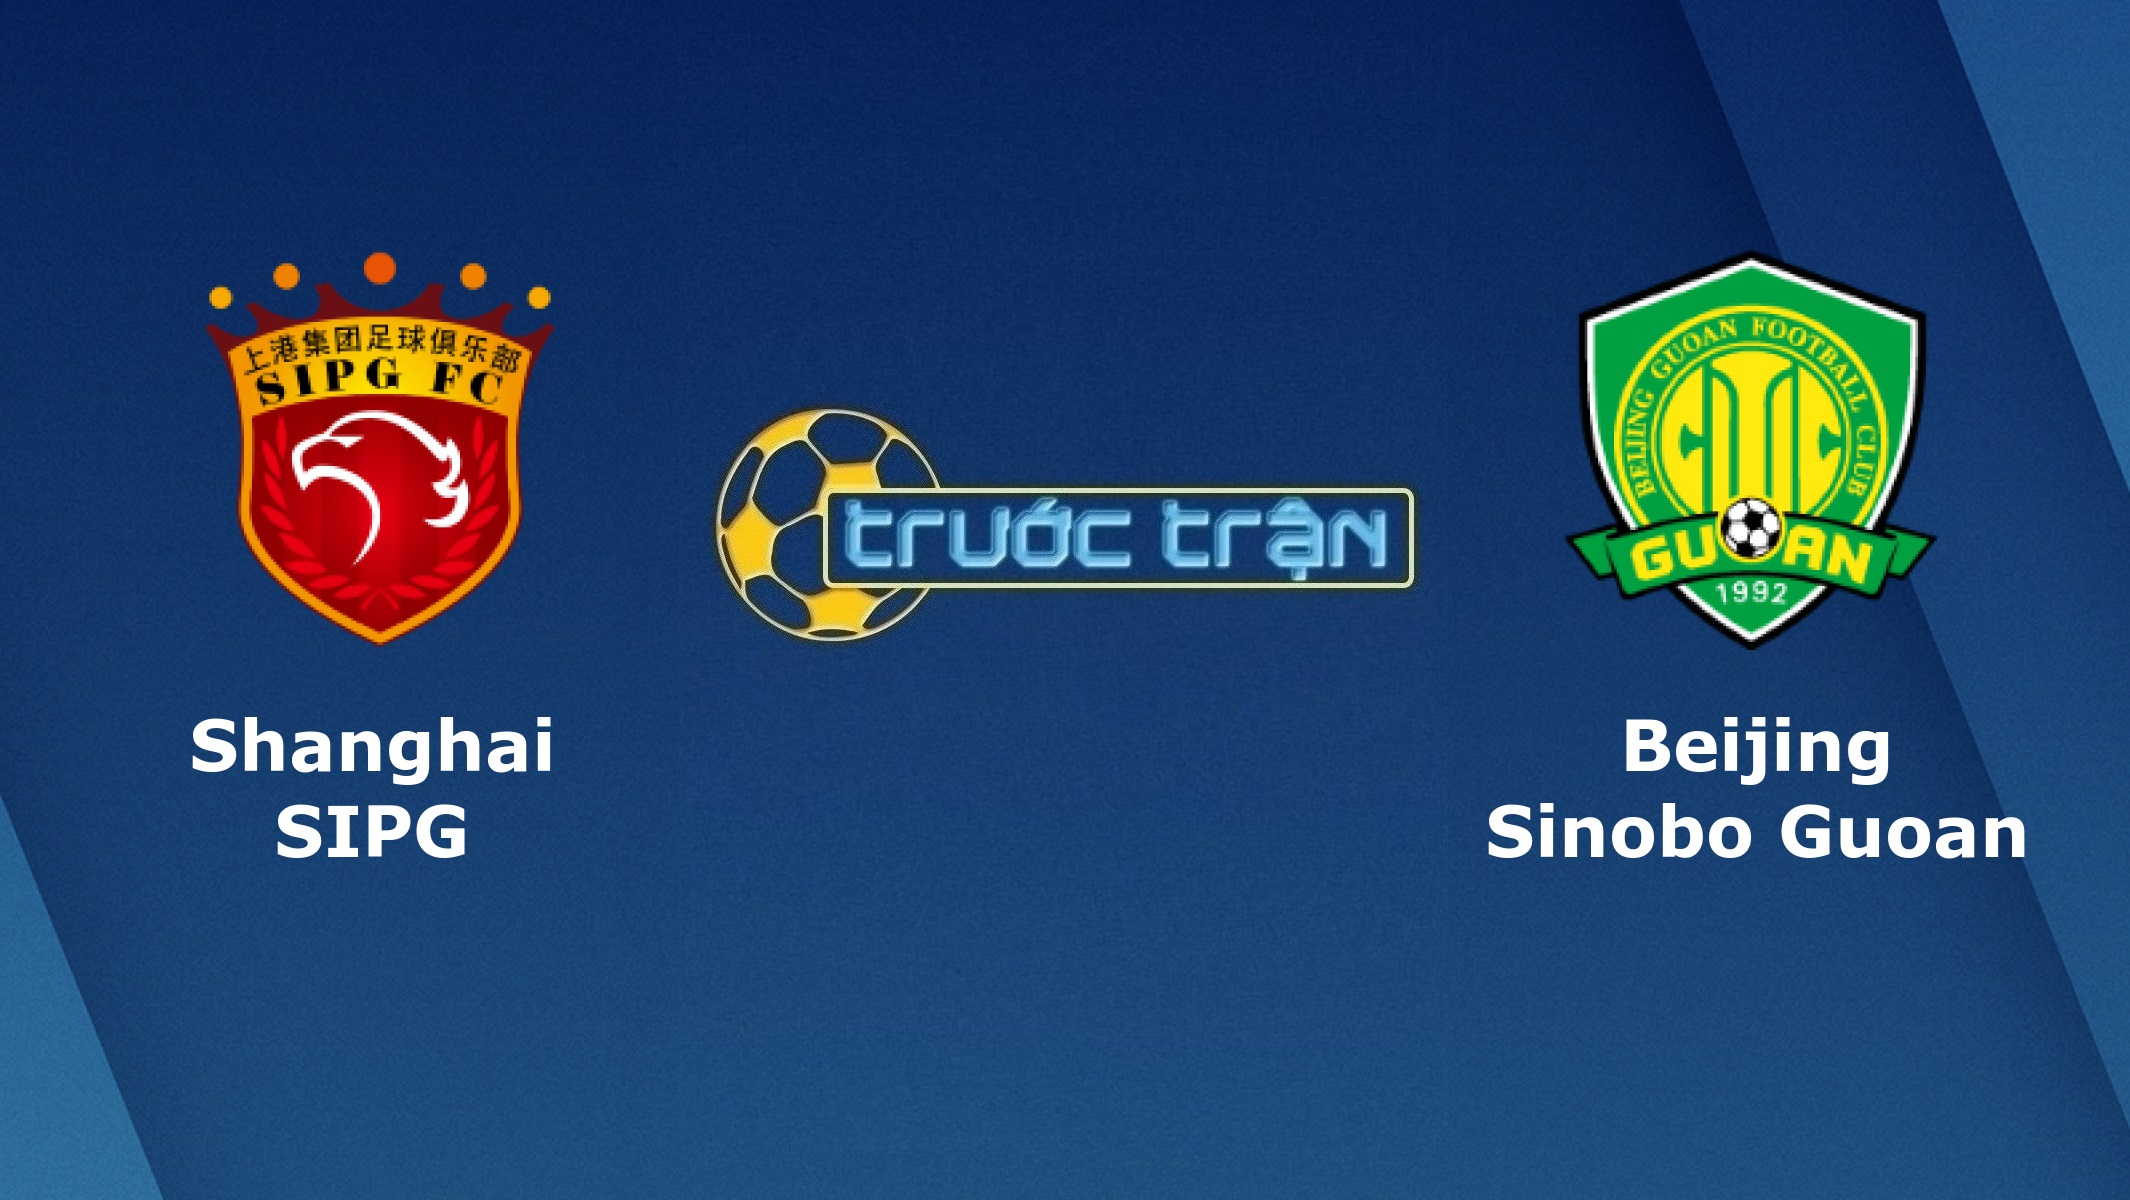 Shanghai SIPG vs Beijing Guoan –Tip kèo bóng đá hôm nay – 25/09